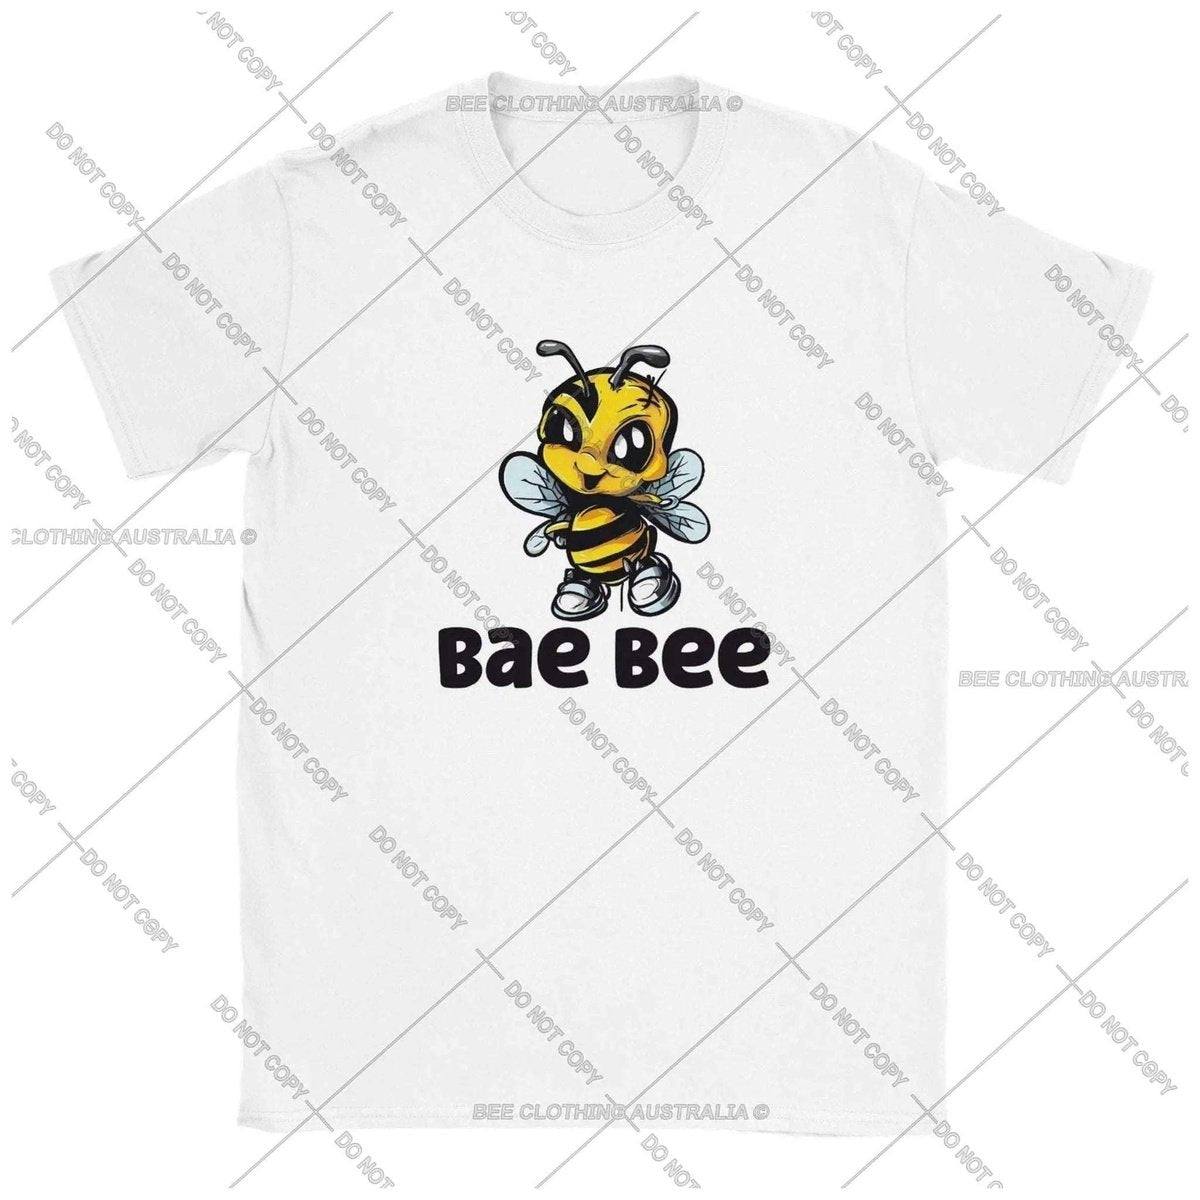 Bae Bee - Baby Bee Kids T-shirt Kids T-Shirts White / XS BC Australia